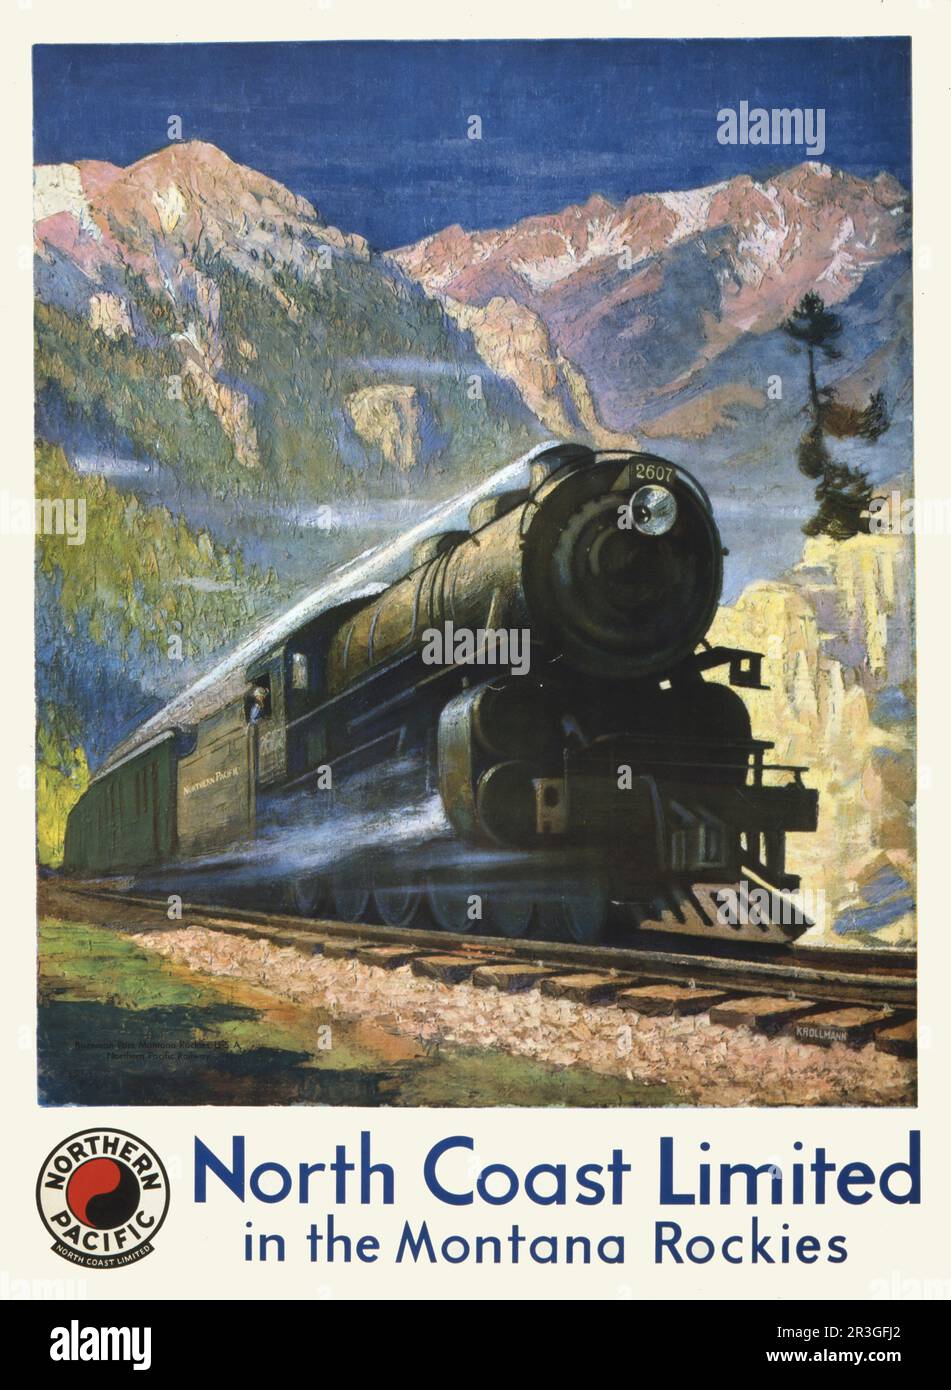 Affiche de voyage vintage pour North Coast Limited dans les Rocheuses du Montana, montrant une machine à vapeur dans le col Bozeman. Banque D'Images